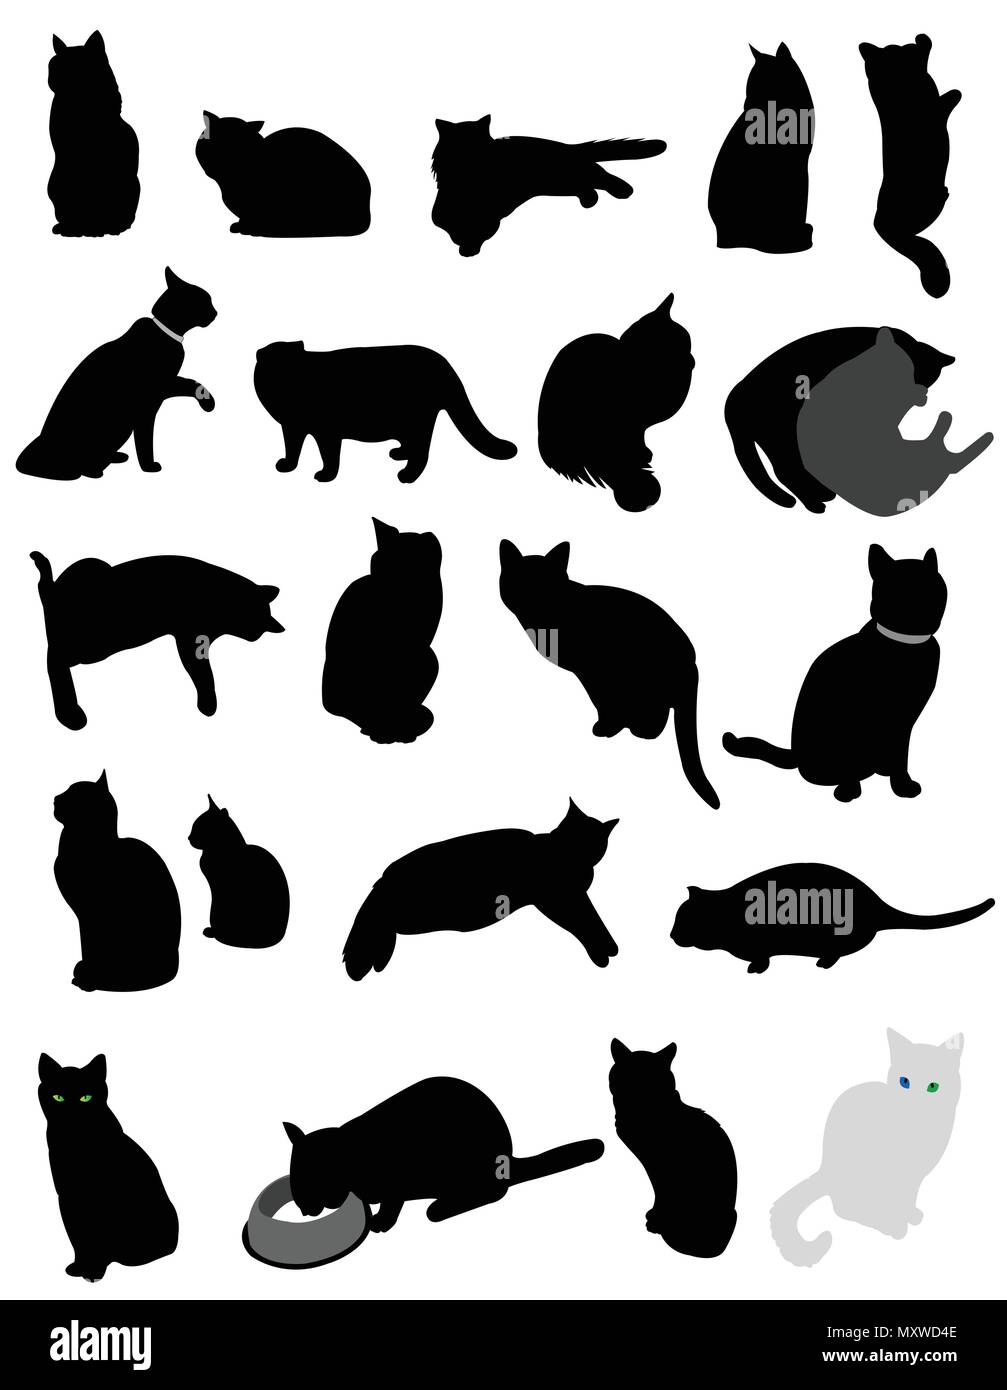 Ikonen Von Katzen Stockfotos und -bilder Kaufen - Alamy